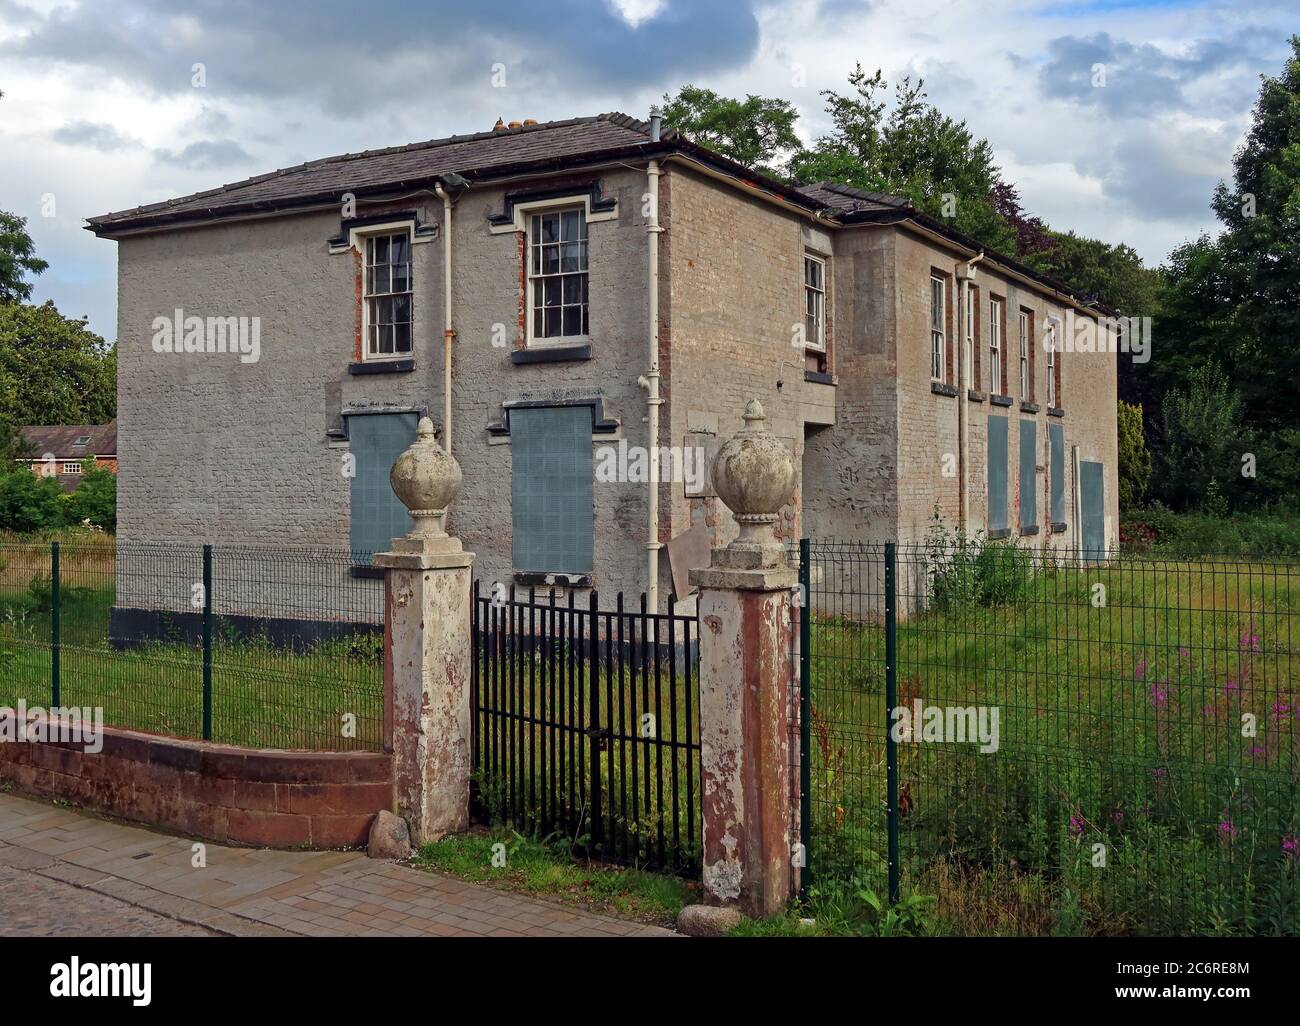 Site de Grappenhall eyesore, bâtiment laissé vacant pendant 25 ans, site de répertoire, sur Church Lane, Warrington, Cheshire, Angleterre, Royaume-Uni Banque D'Images